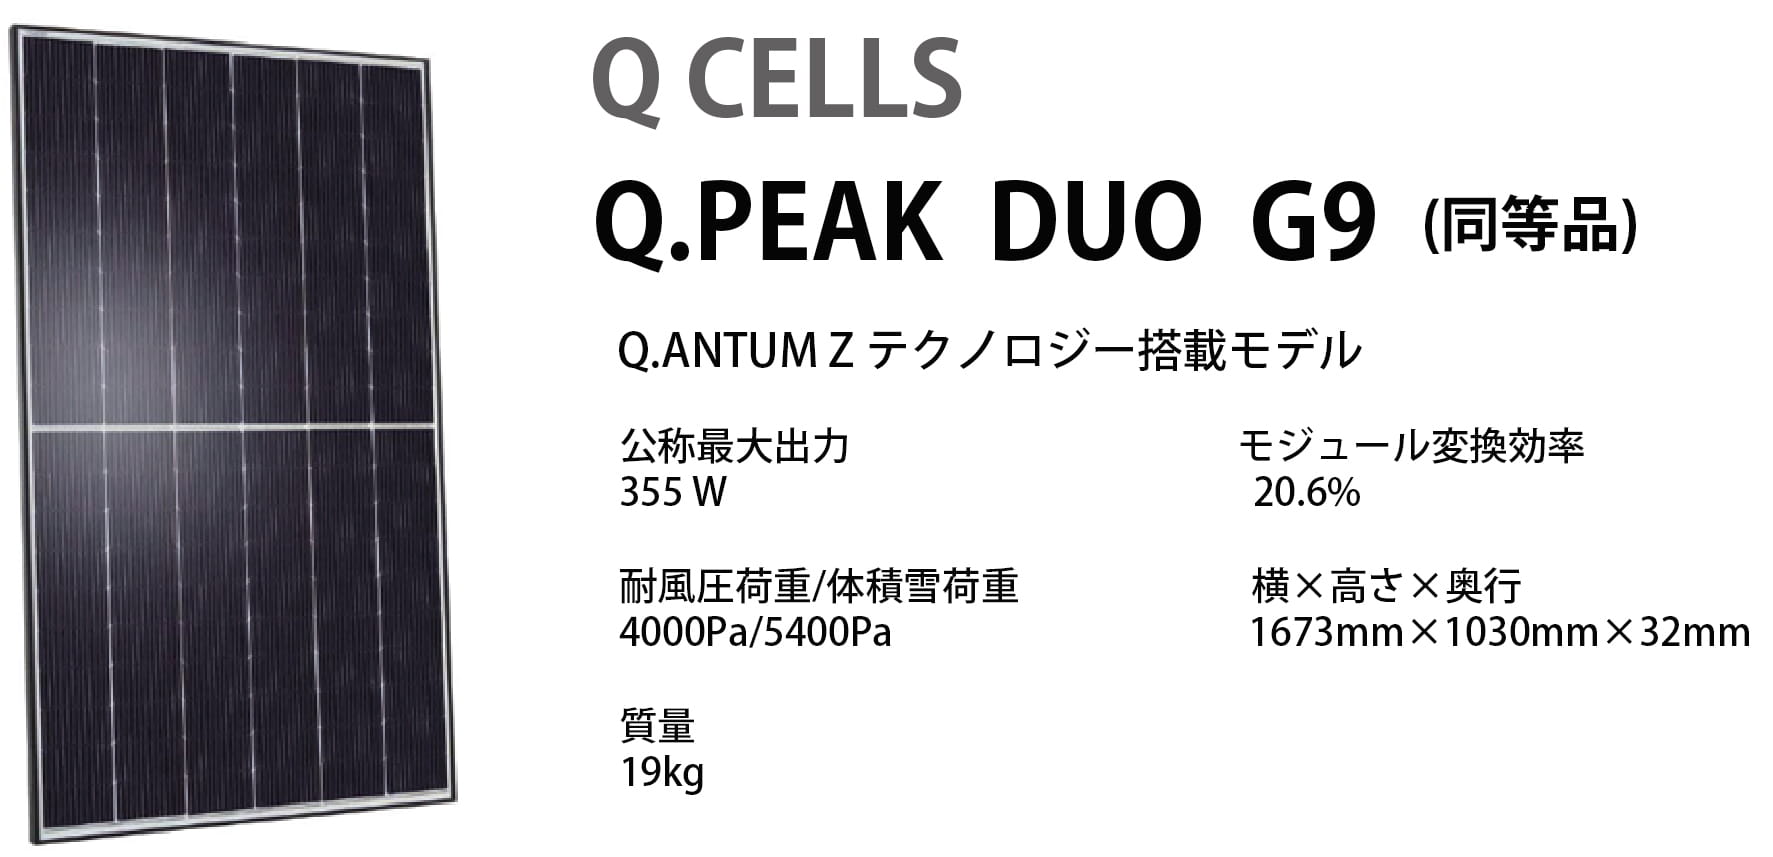 ソーラーパネル Q CELLS Q.PEAK DUO G9